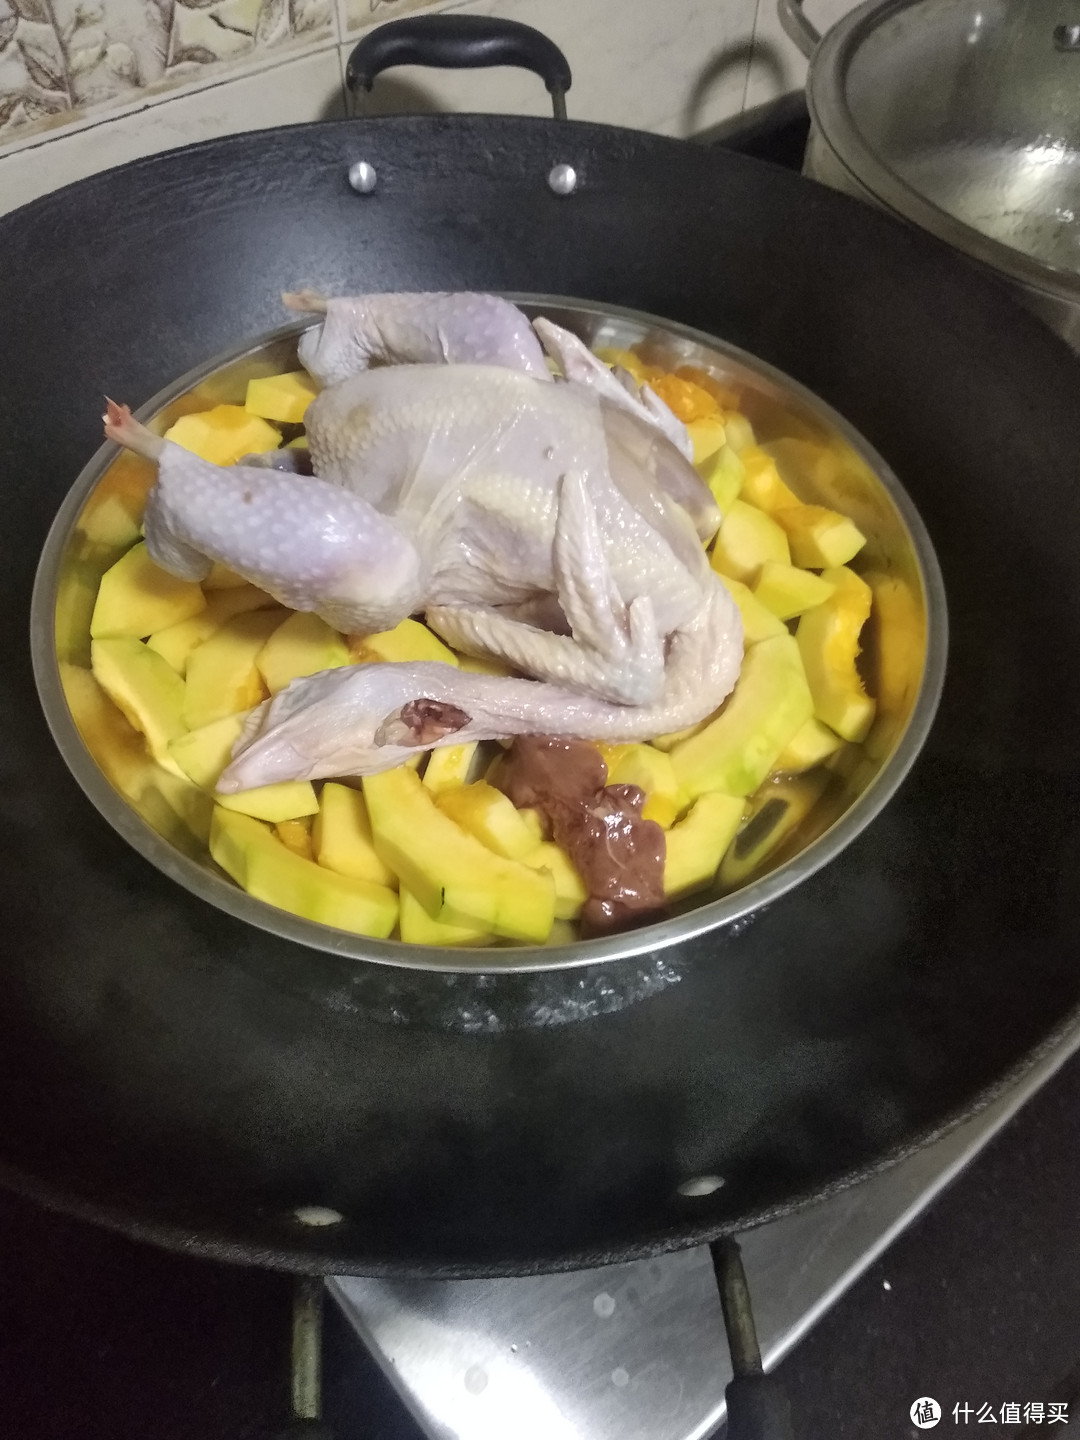 把准备好的鸡，放到烧开水的锅里面蒸